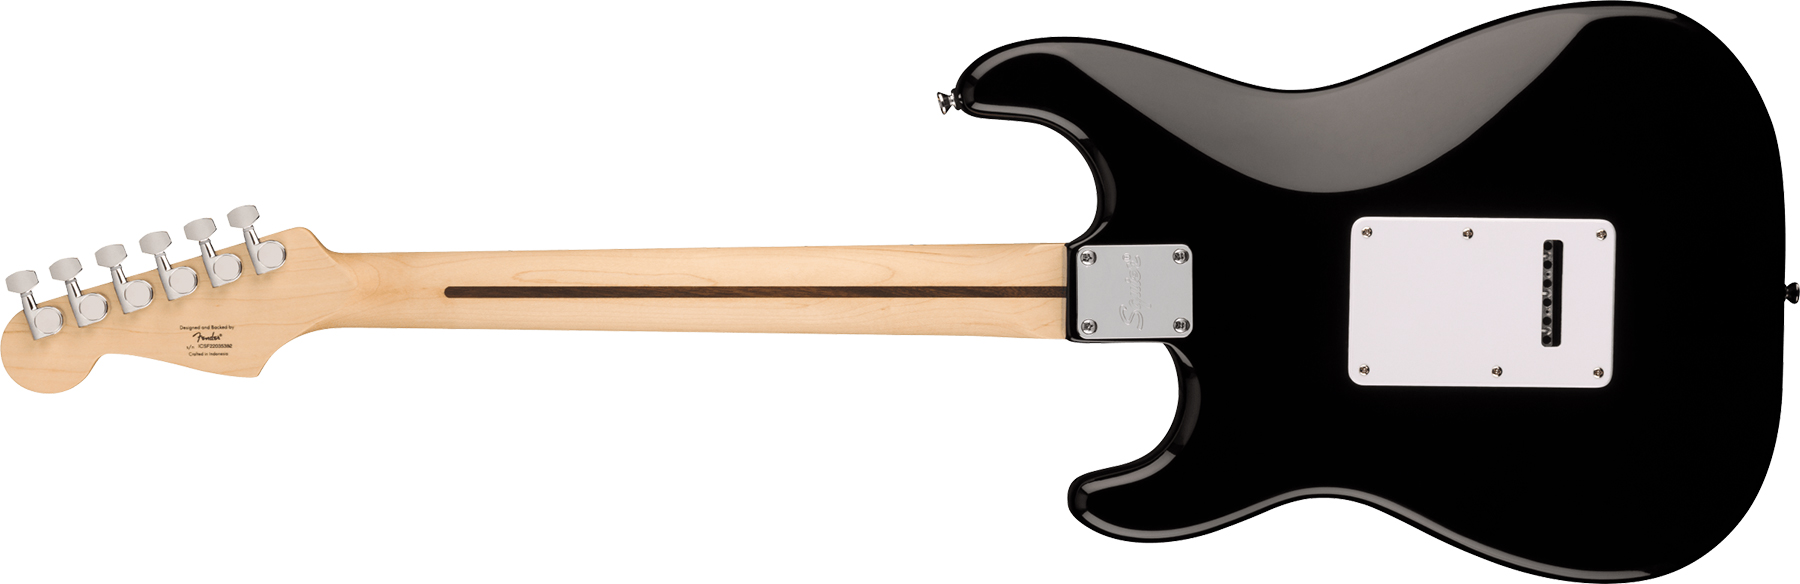 Squier Sonic Strat Pack 3s Trem Mn - Black - Electric guitar set - Variation 3